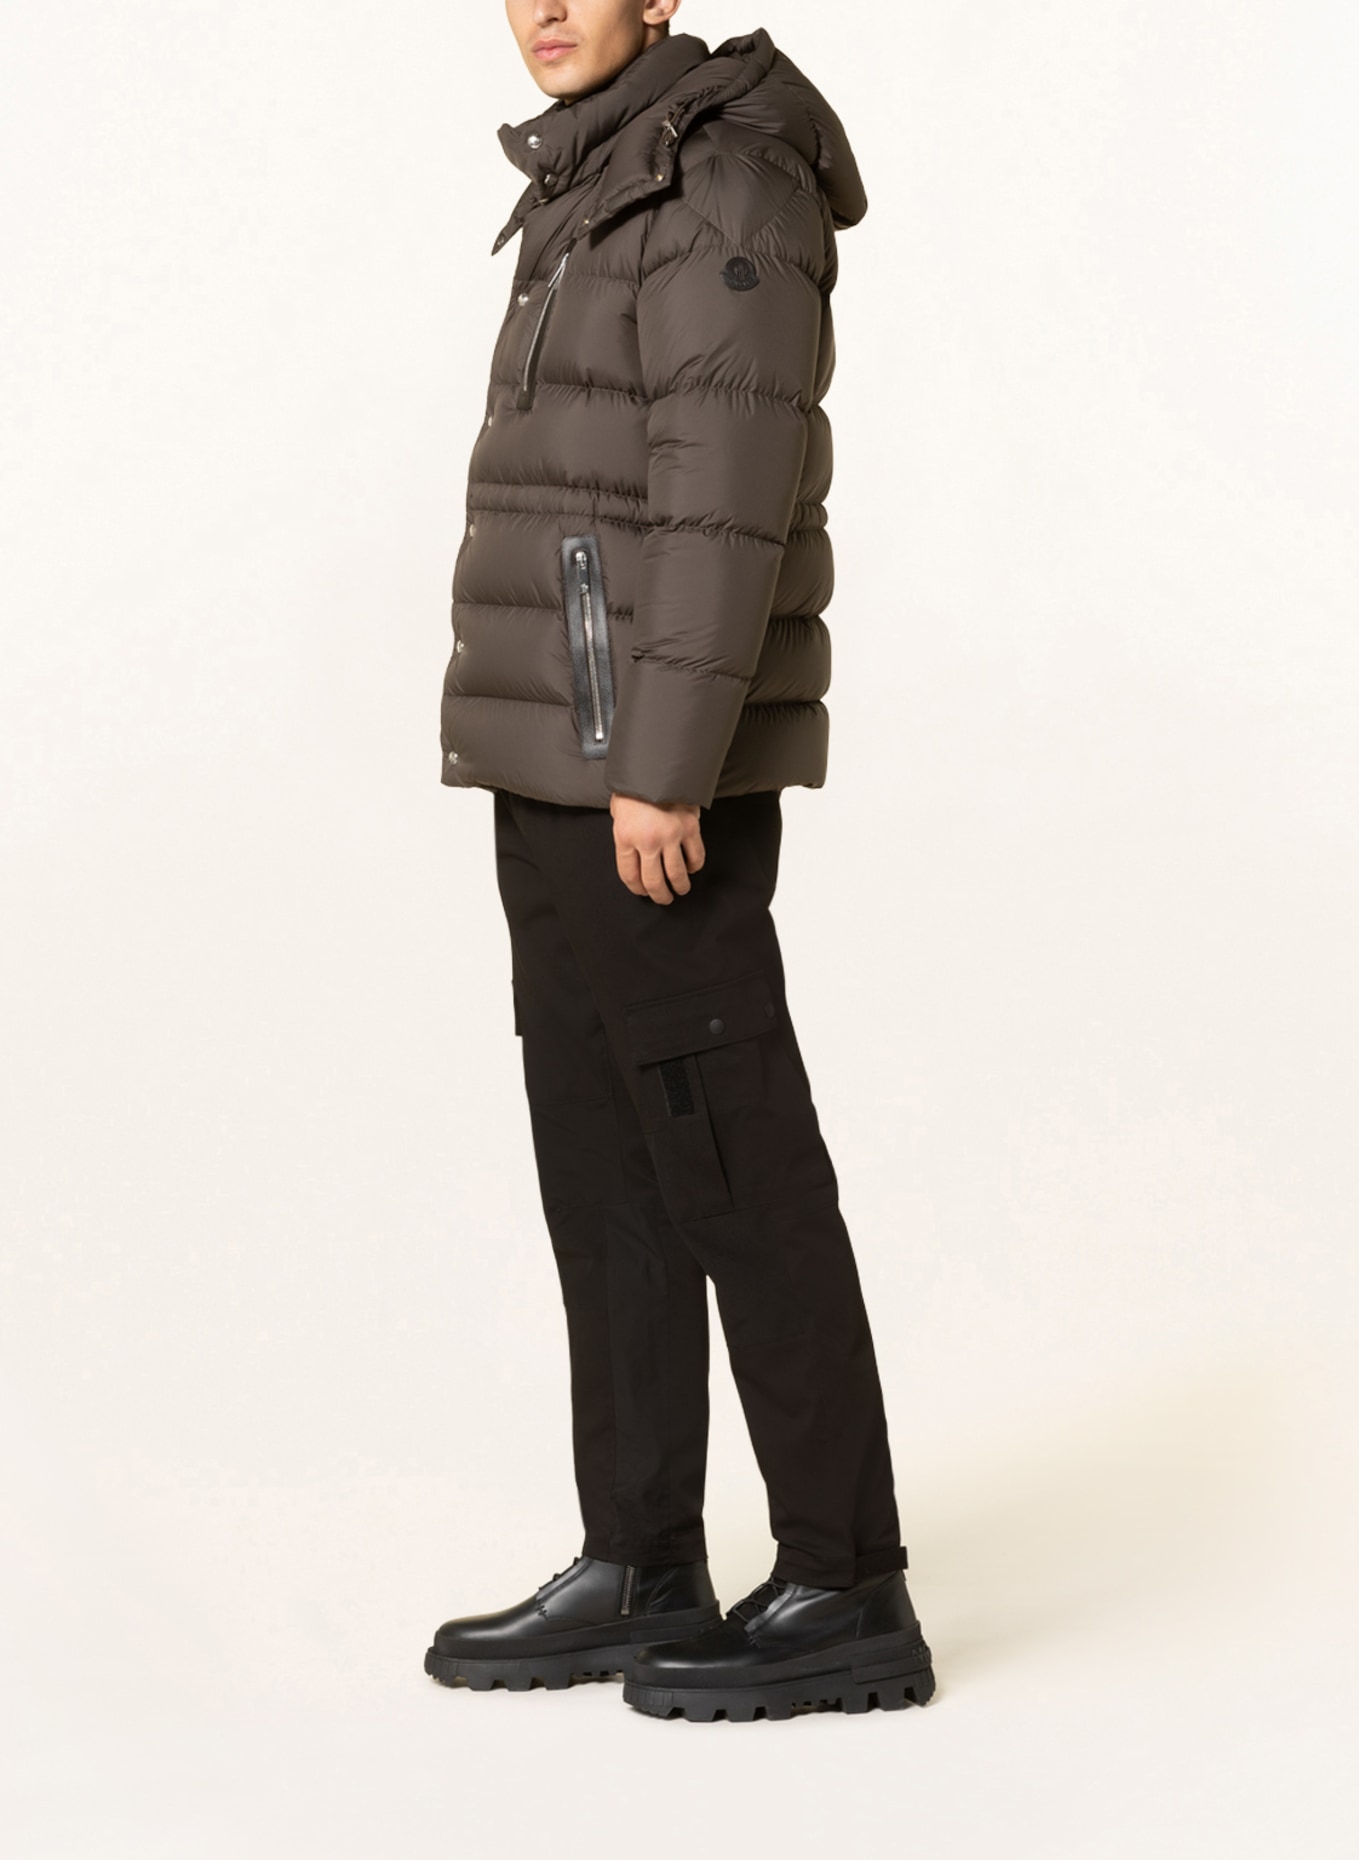 MONCLER Down jacket BAUGES with removable hood, Color: OLIVE (Image 4)